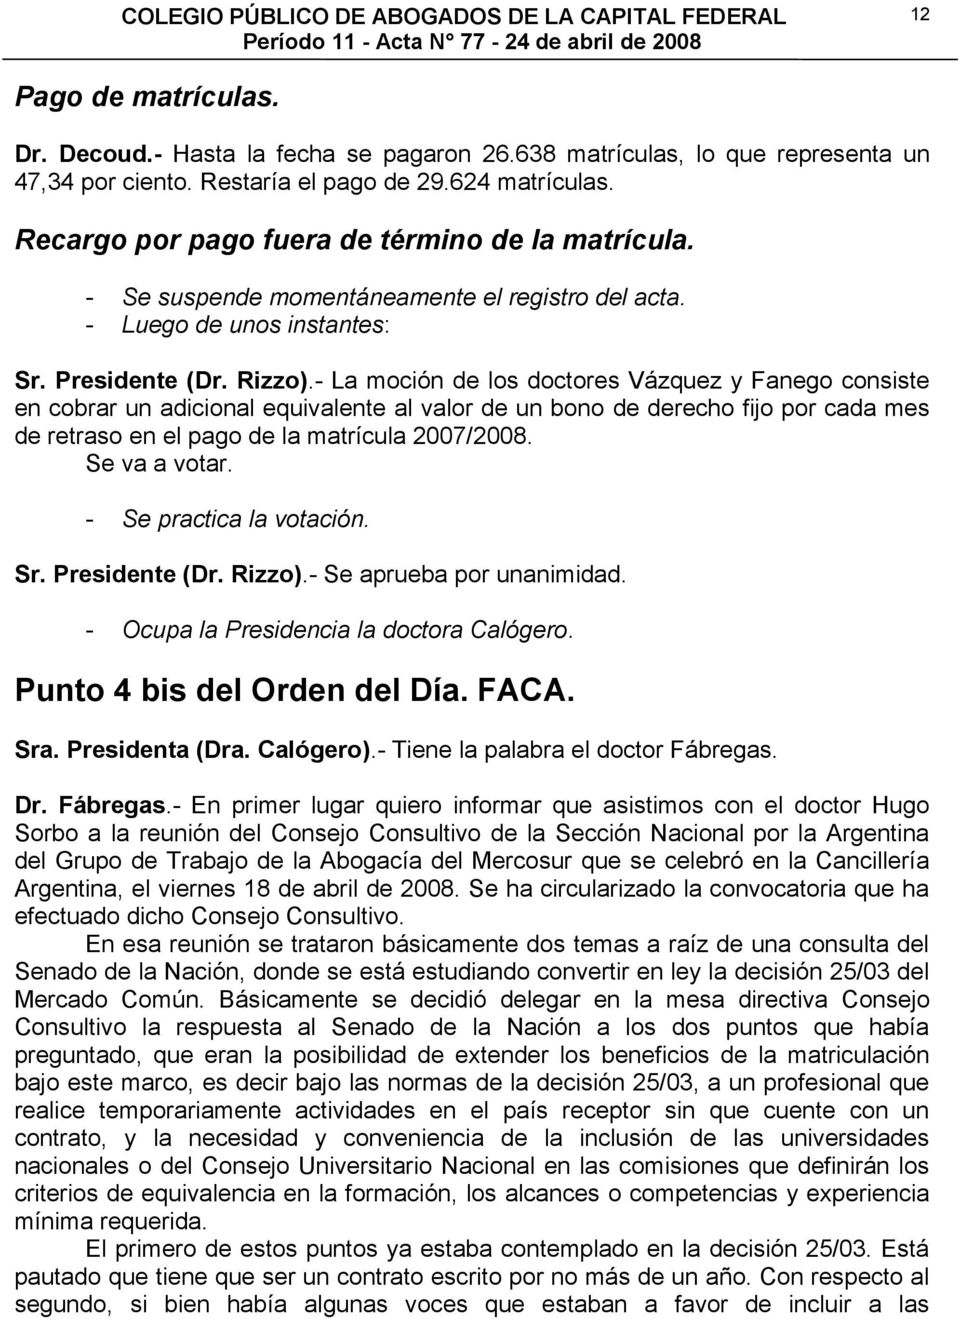 - La moción de los doctores Vázquez y Fanego consiste en cobrar un adicional equivalente al valor de un bono de derecho fijo por cada mes de retraso en el pago de la matrícula 2007/2008.